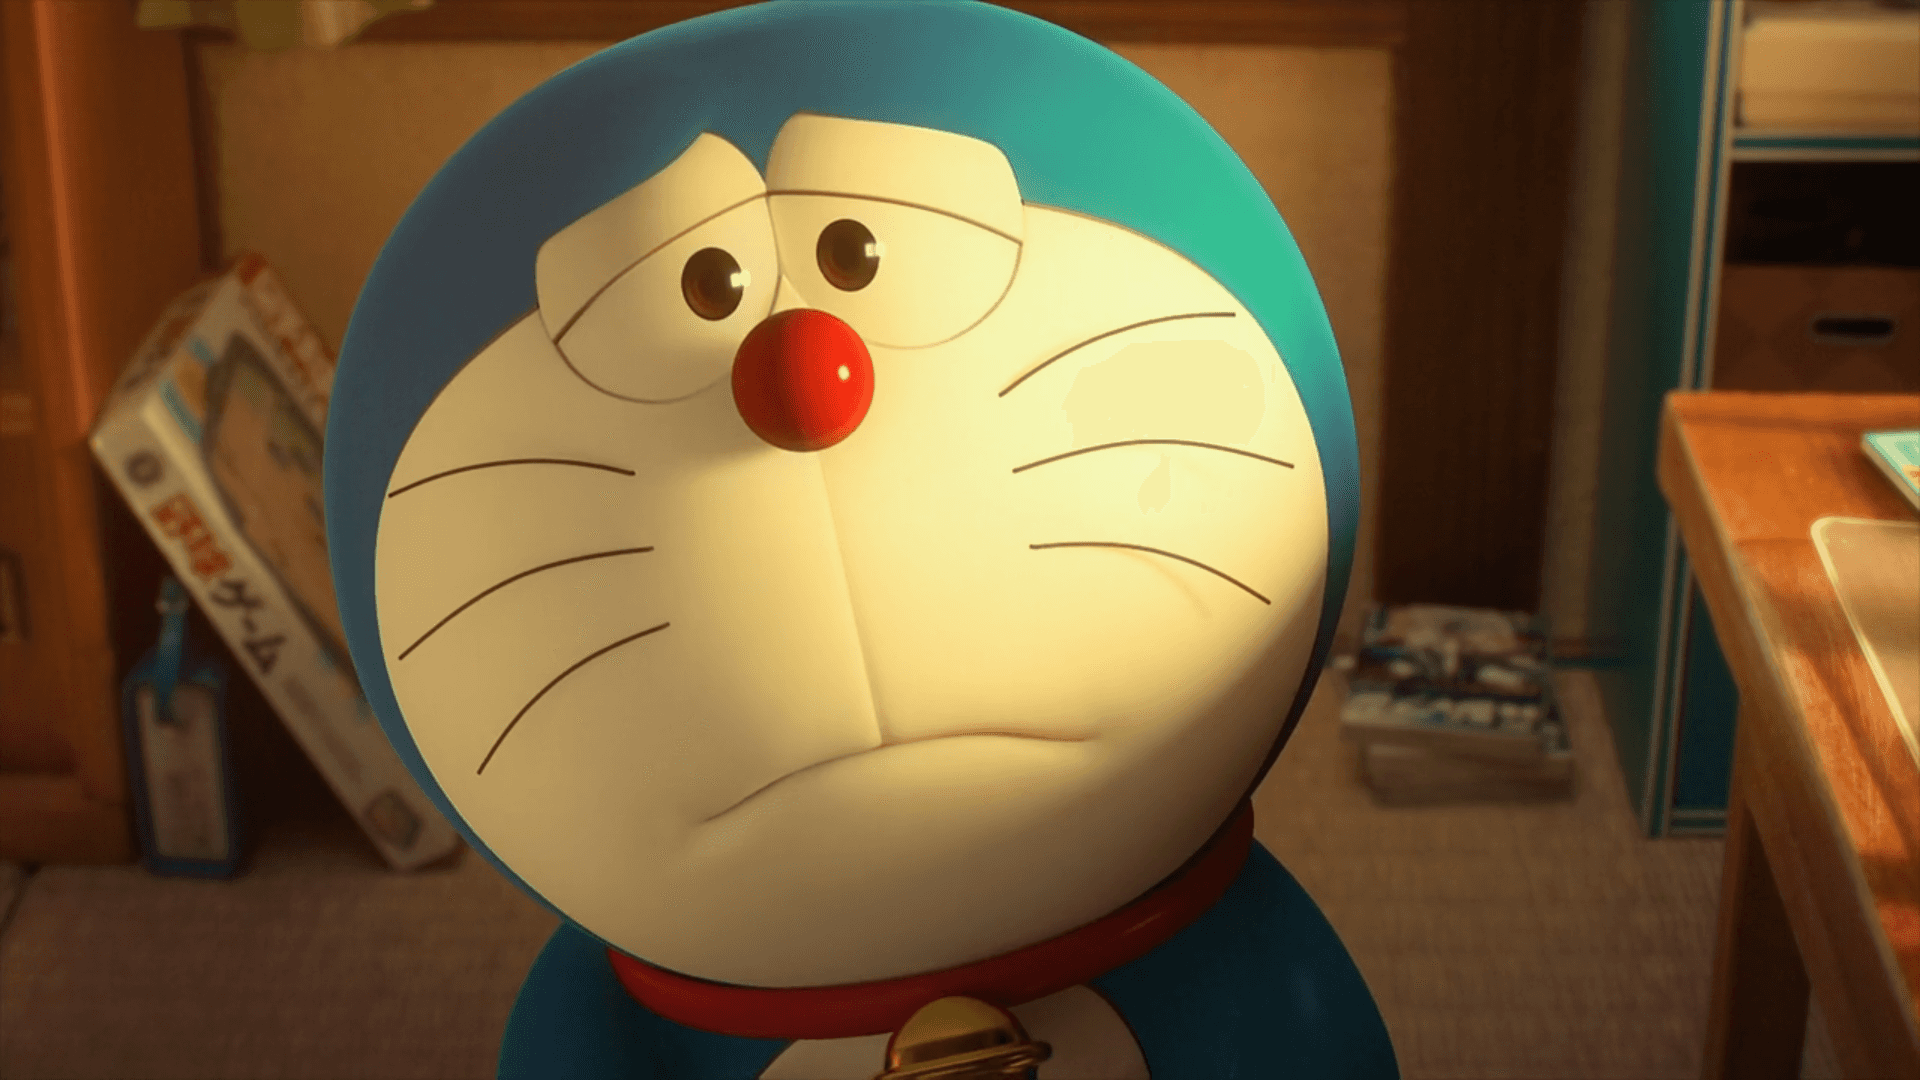 Doraemonen Su Mundo De Imaginación.